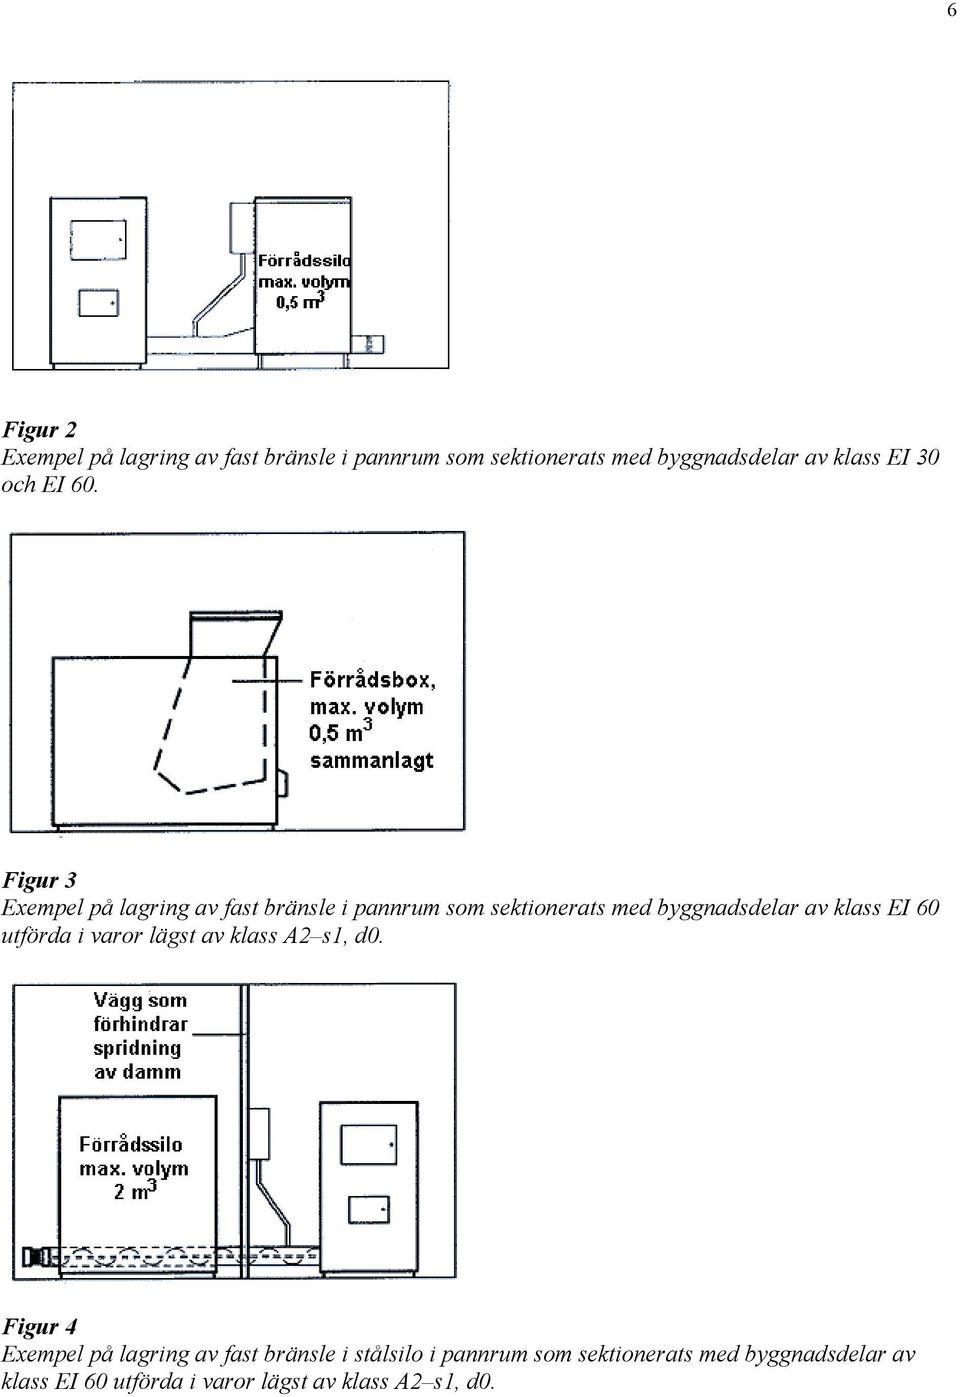 Figur 3 Exempel på lagring av fast bränsle i pannrum som sektionerats med byggnadsdelar av klass EI 60